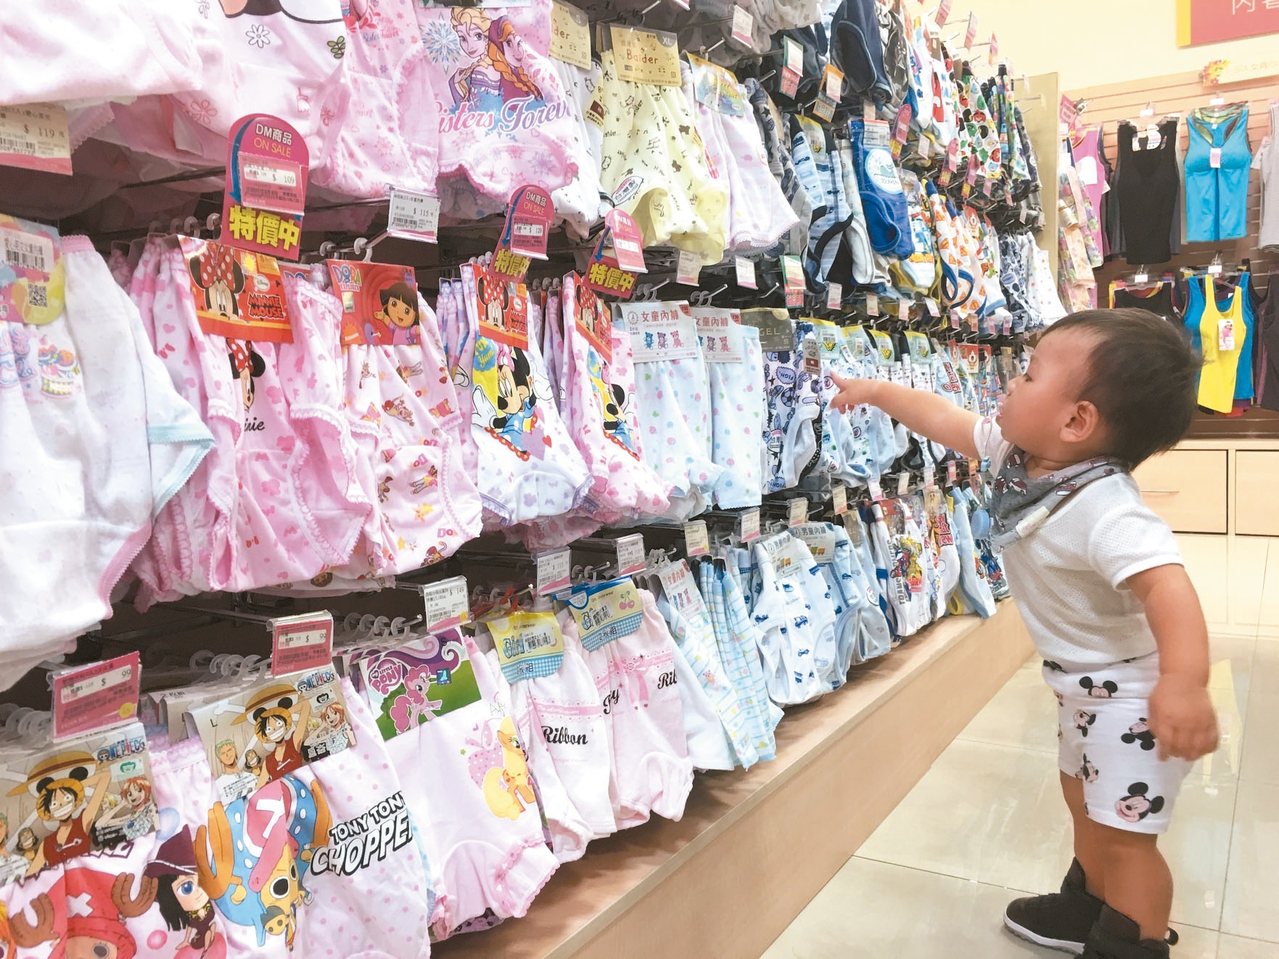 市售兒童內褲琳瑯滿目、花色樣式多，消保官建議新品洗了再讓小寶貝穿著。